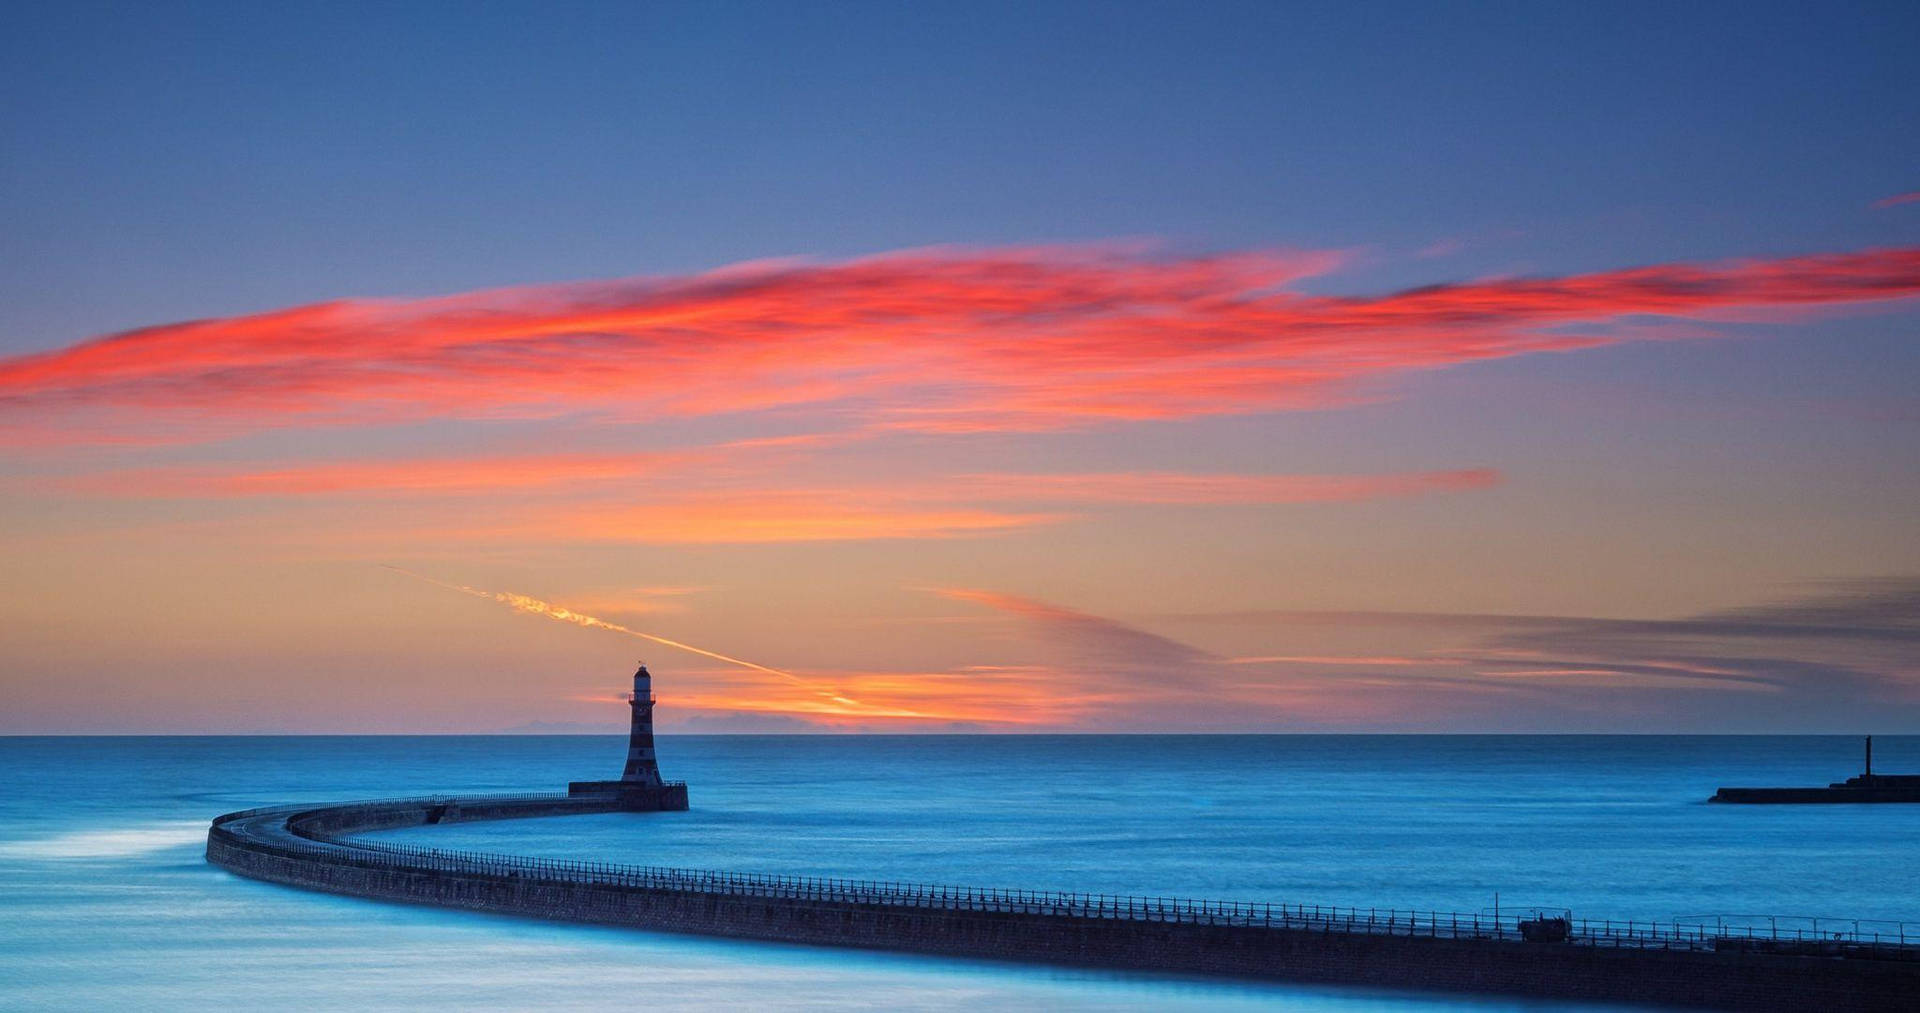 Lighthouse Under Sunset Clouds Wallpaper